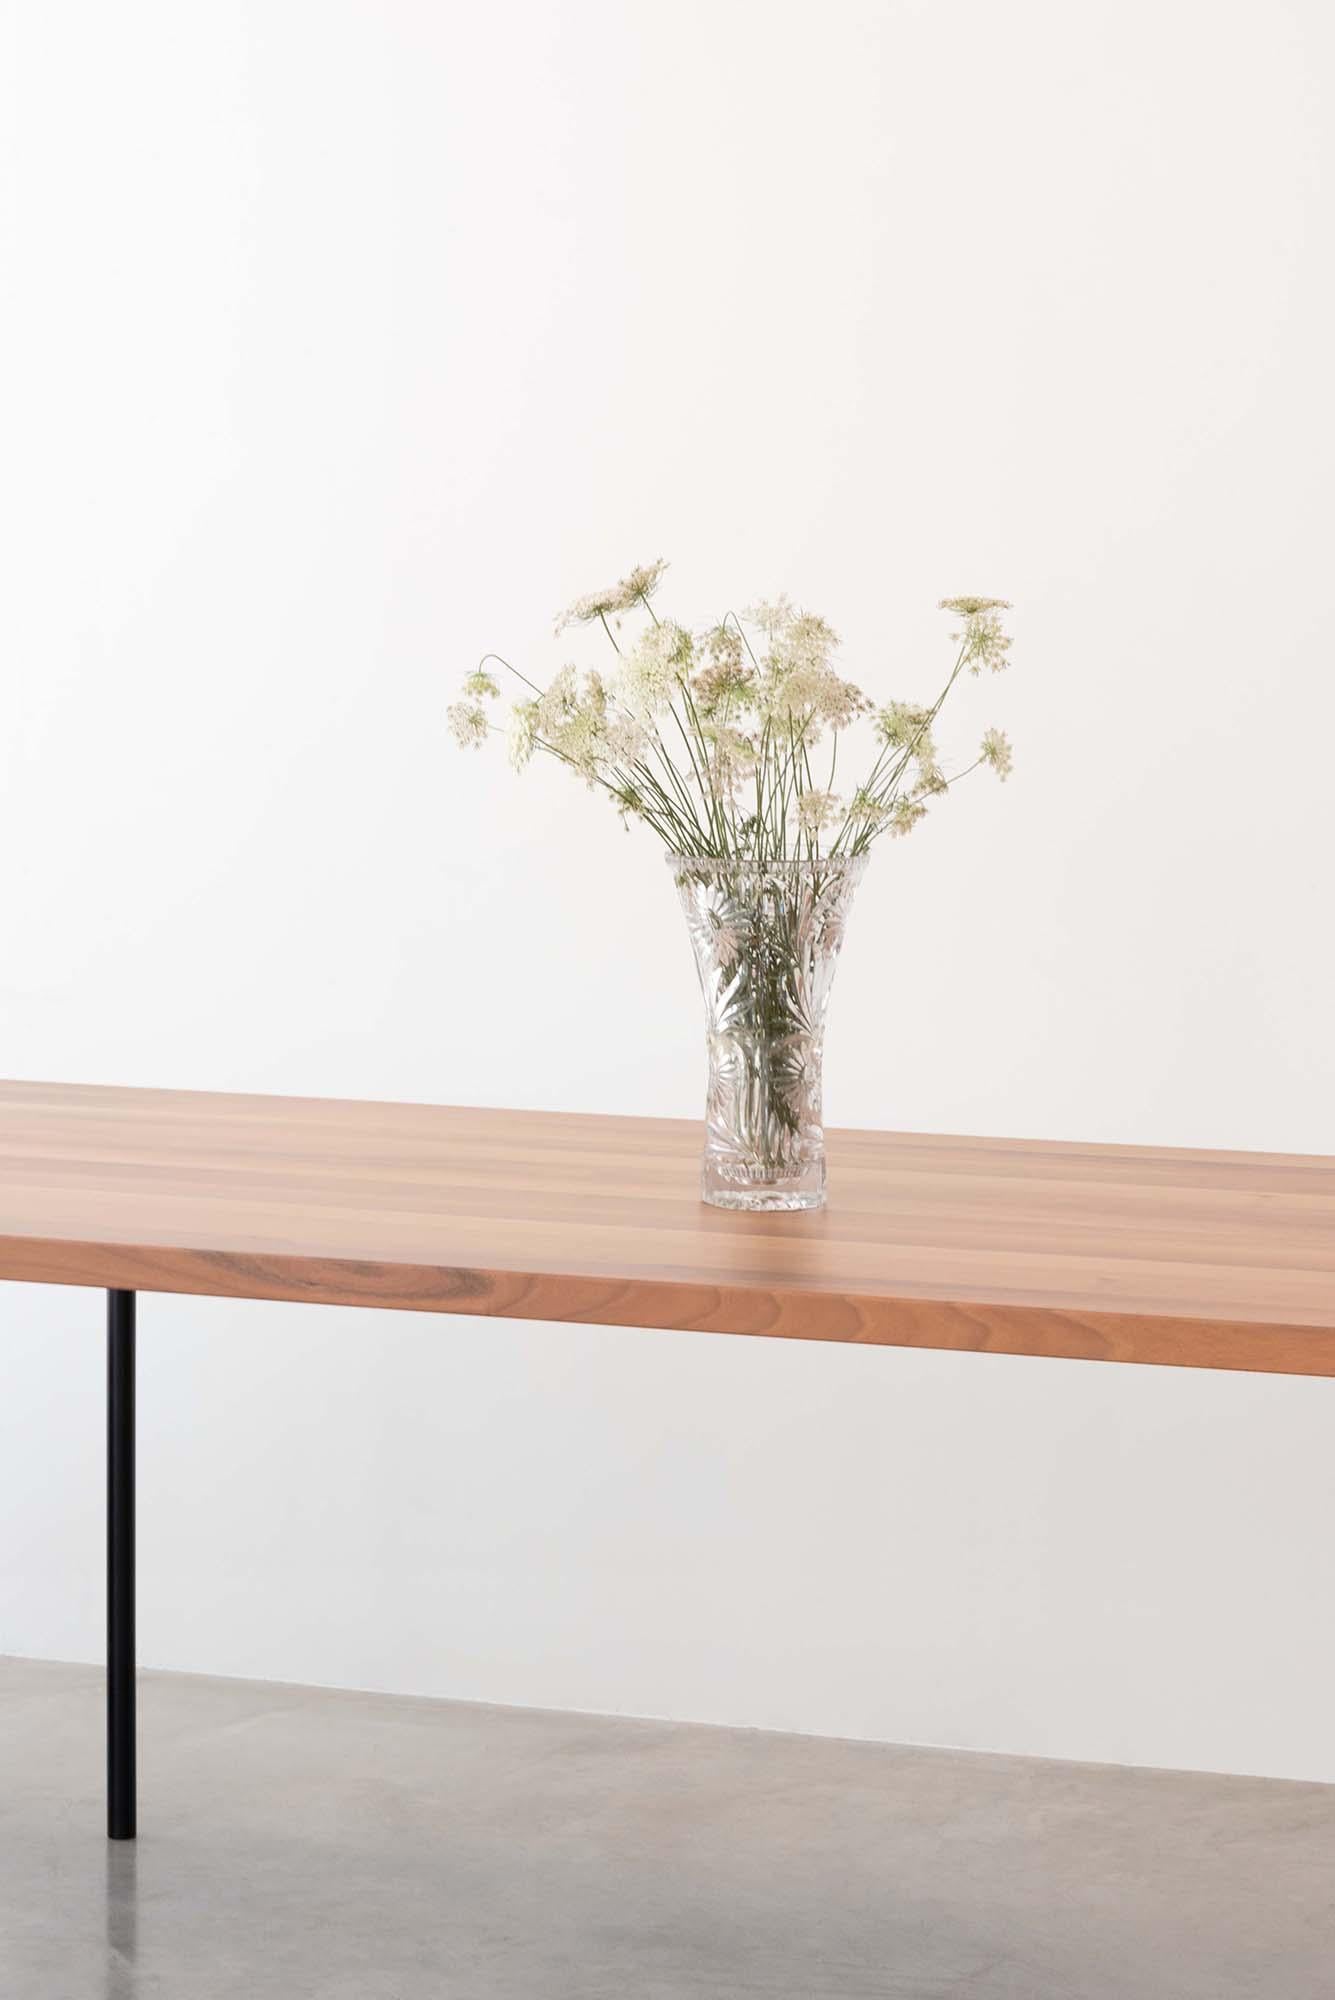 Quatre fins pieds en métal peint soutiennent un solide plateau en noyer européen.
De forme rectangulaire, la table garde un design simple avec une ligne naïve et rigoureuse.

Concepteur : Roberto Cicchinè.
 